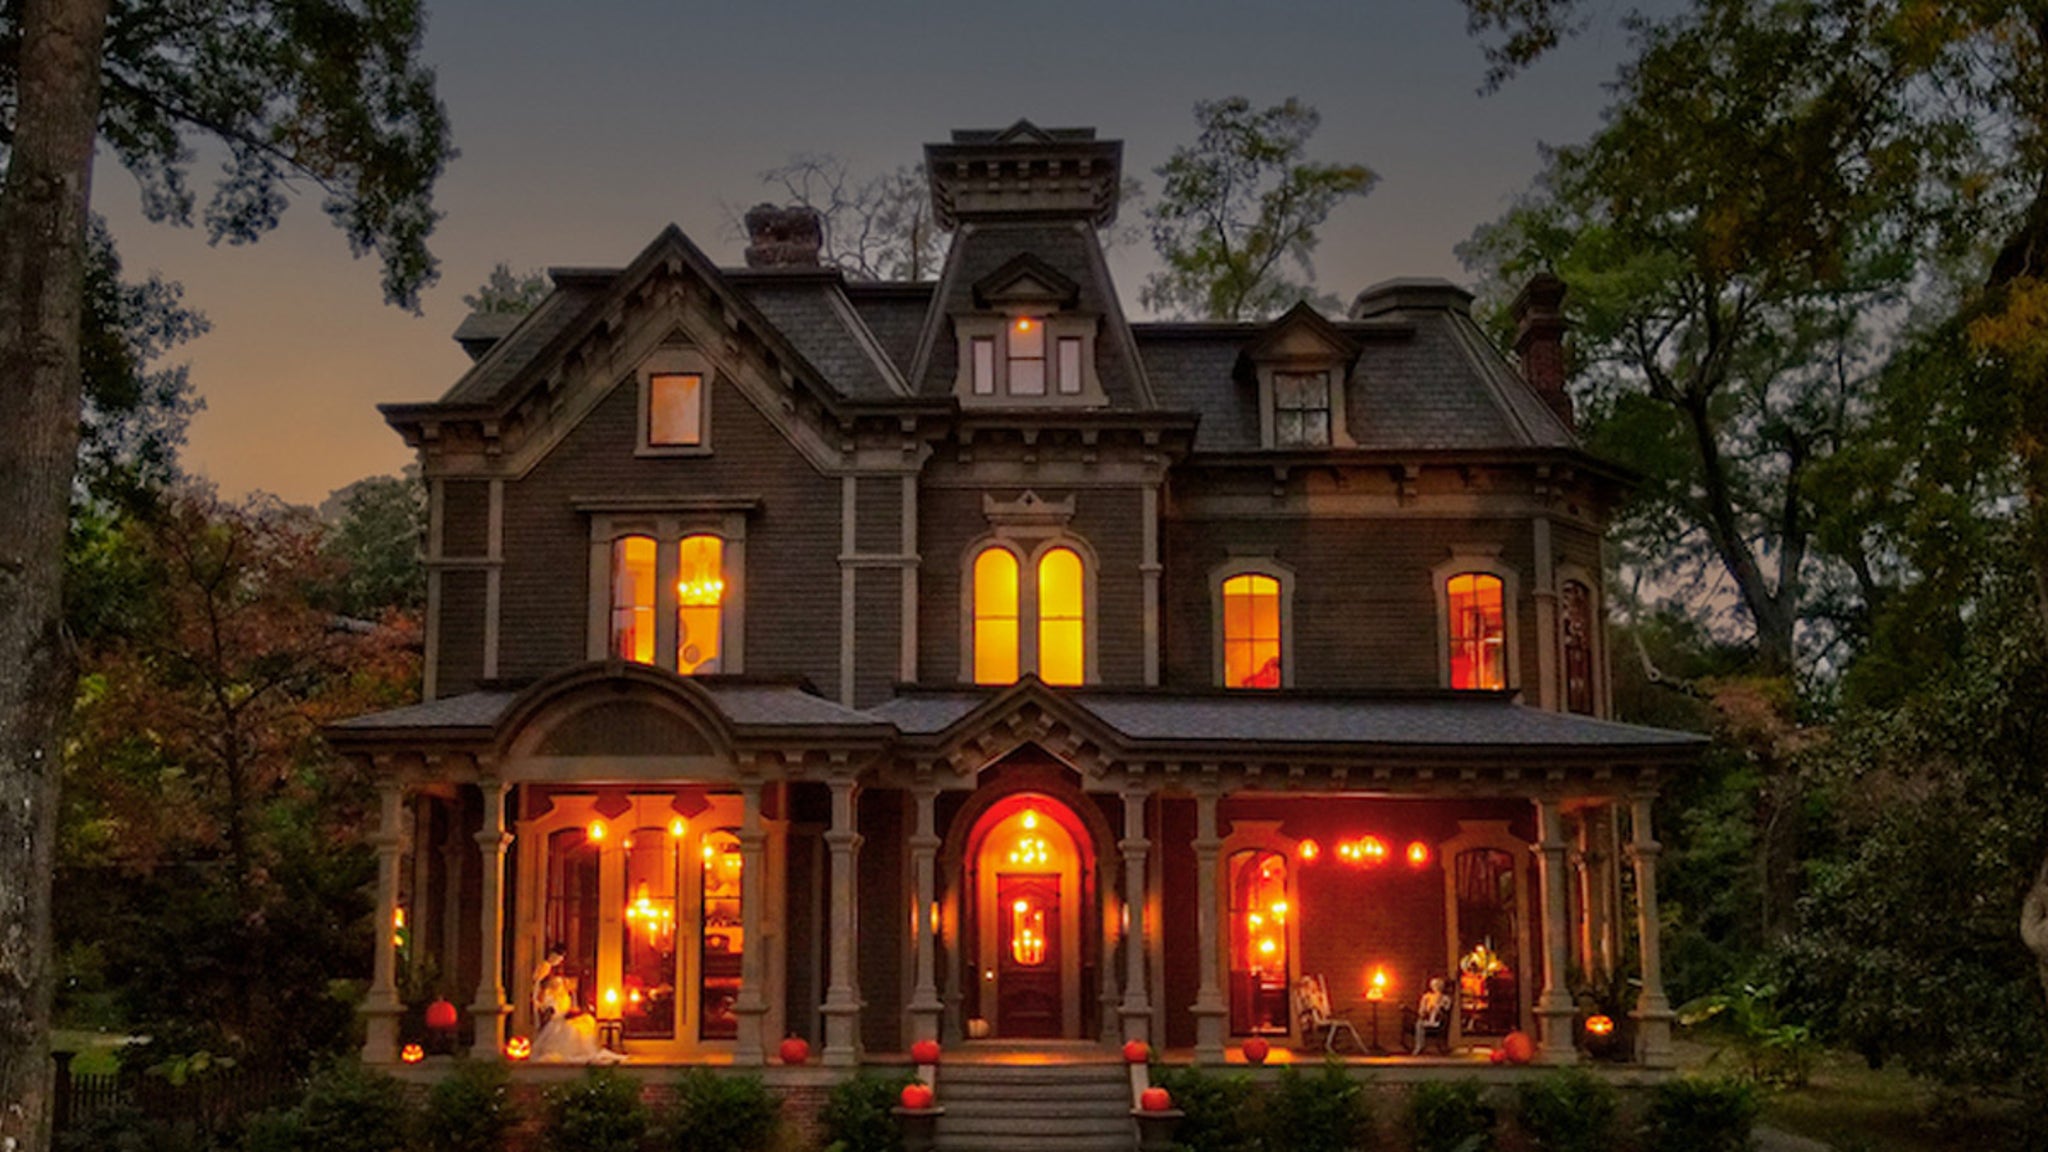 Будинок Creel House «Дивні речі» виставлено на продаж за 1,5 мільйона доларів